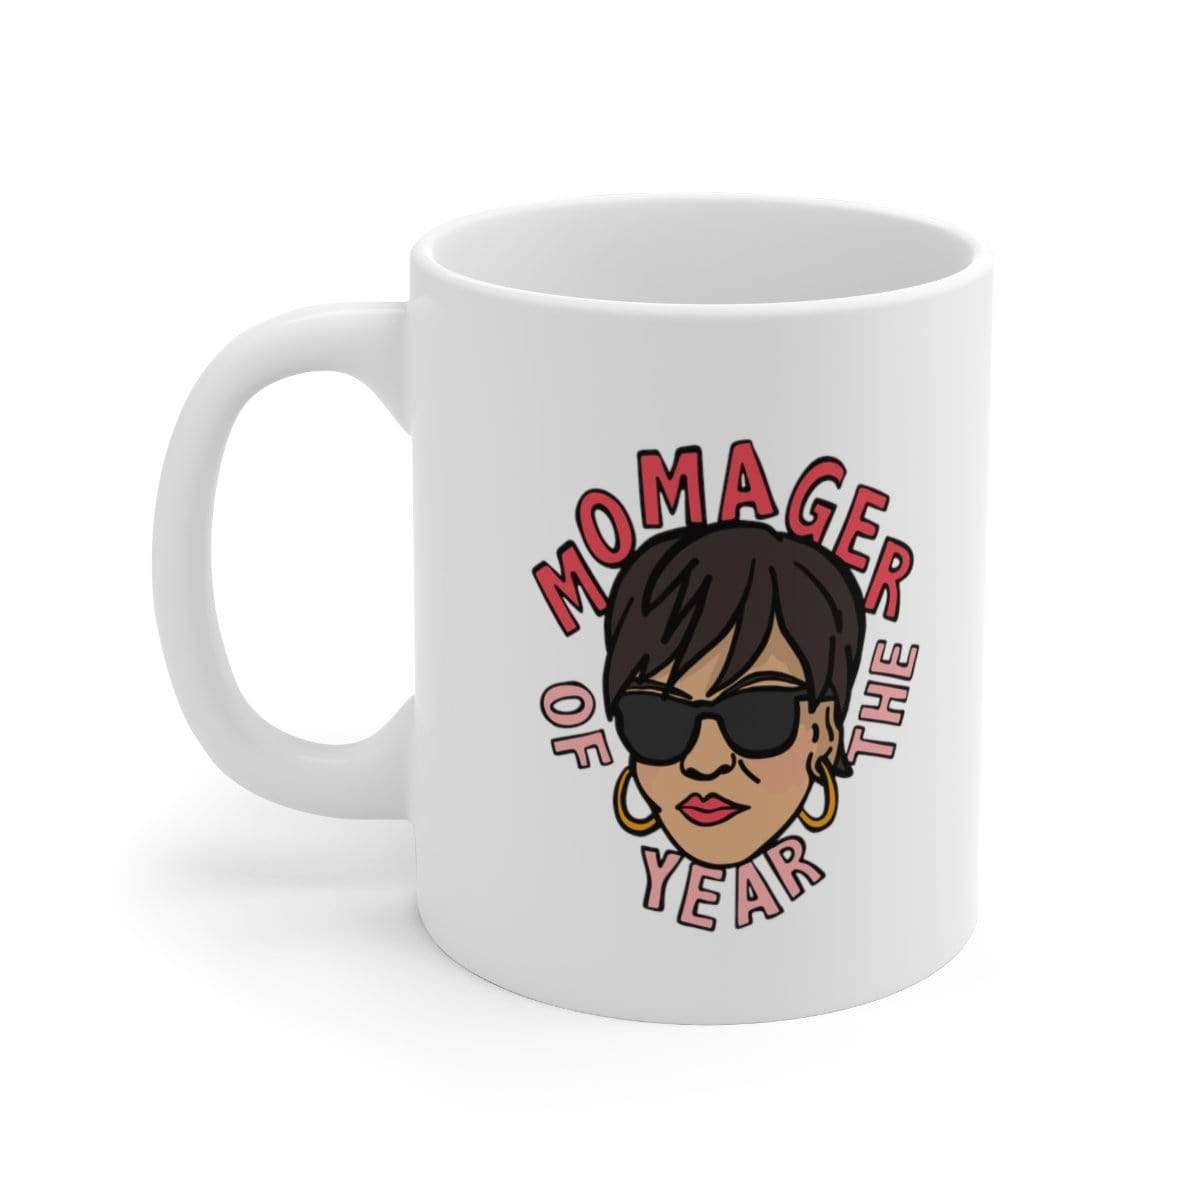 Momager 🕶️ - Coffee Mug